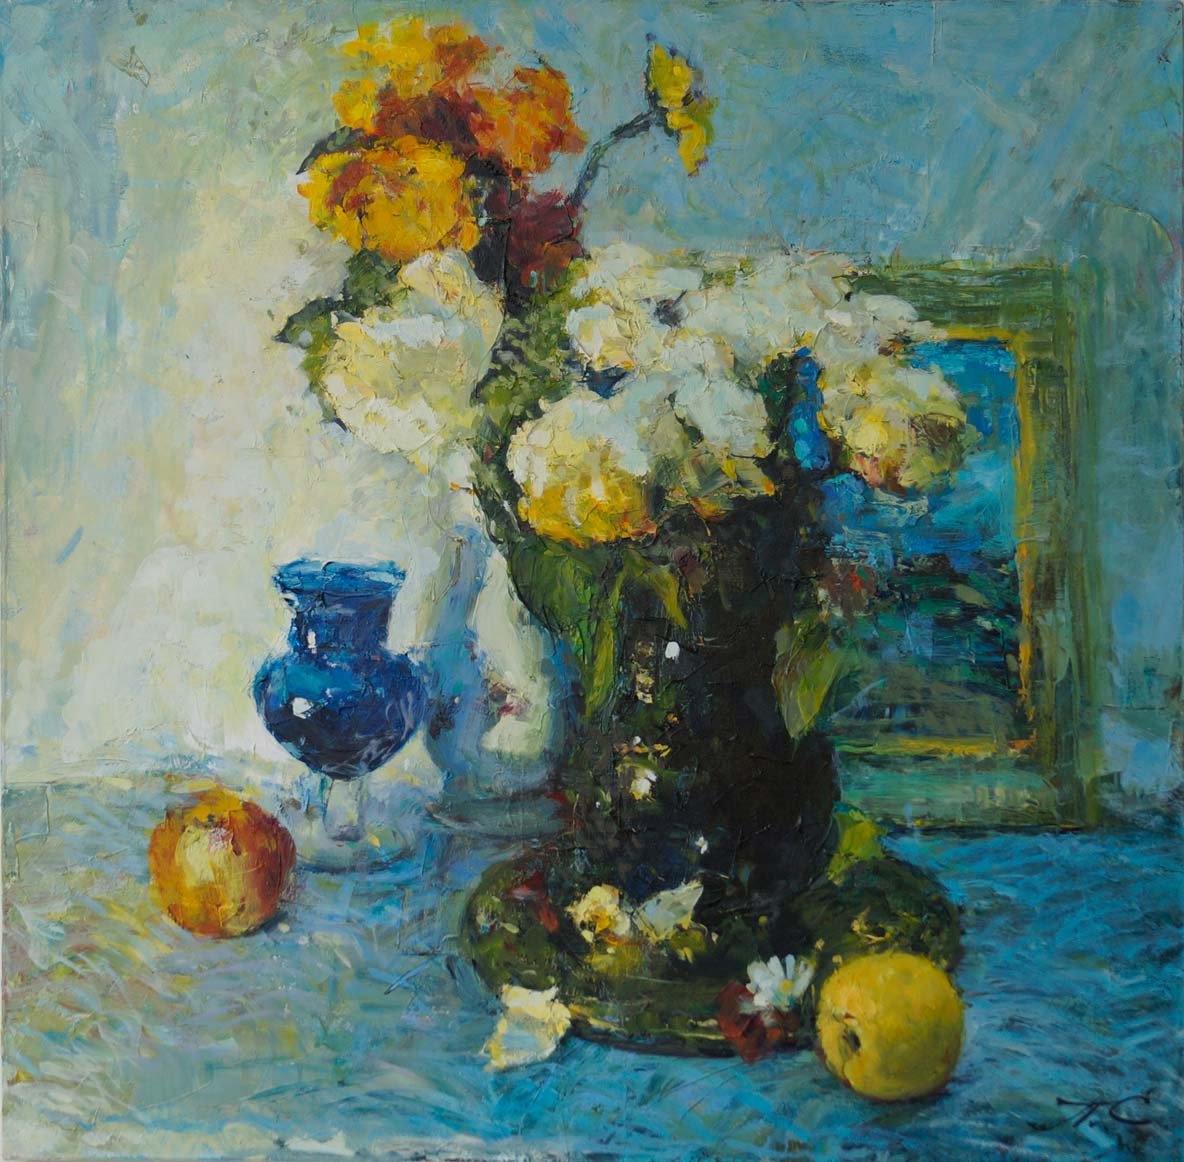 静物与蓝色花瓶 - 1, Sergei Prokhorov, 买画 油